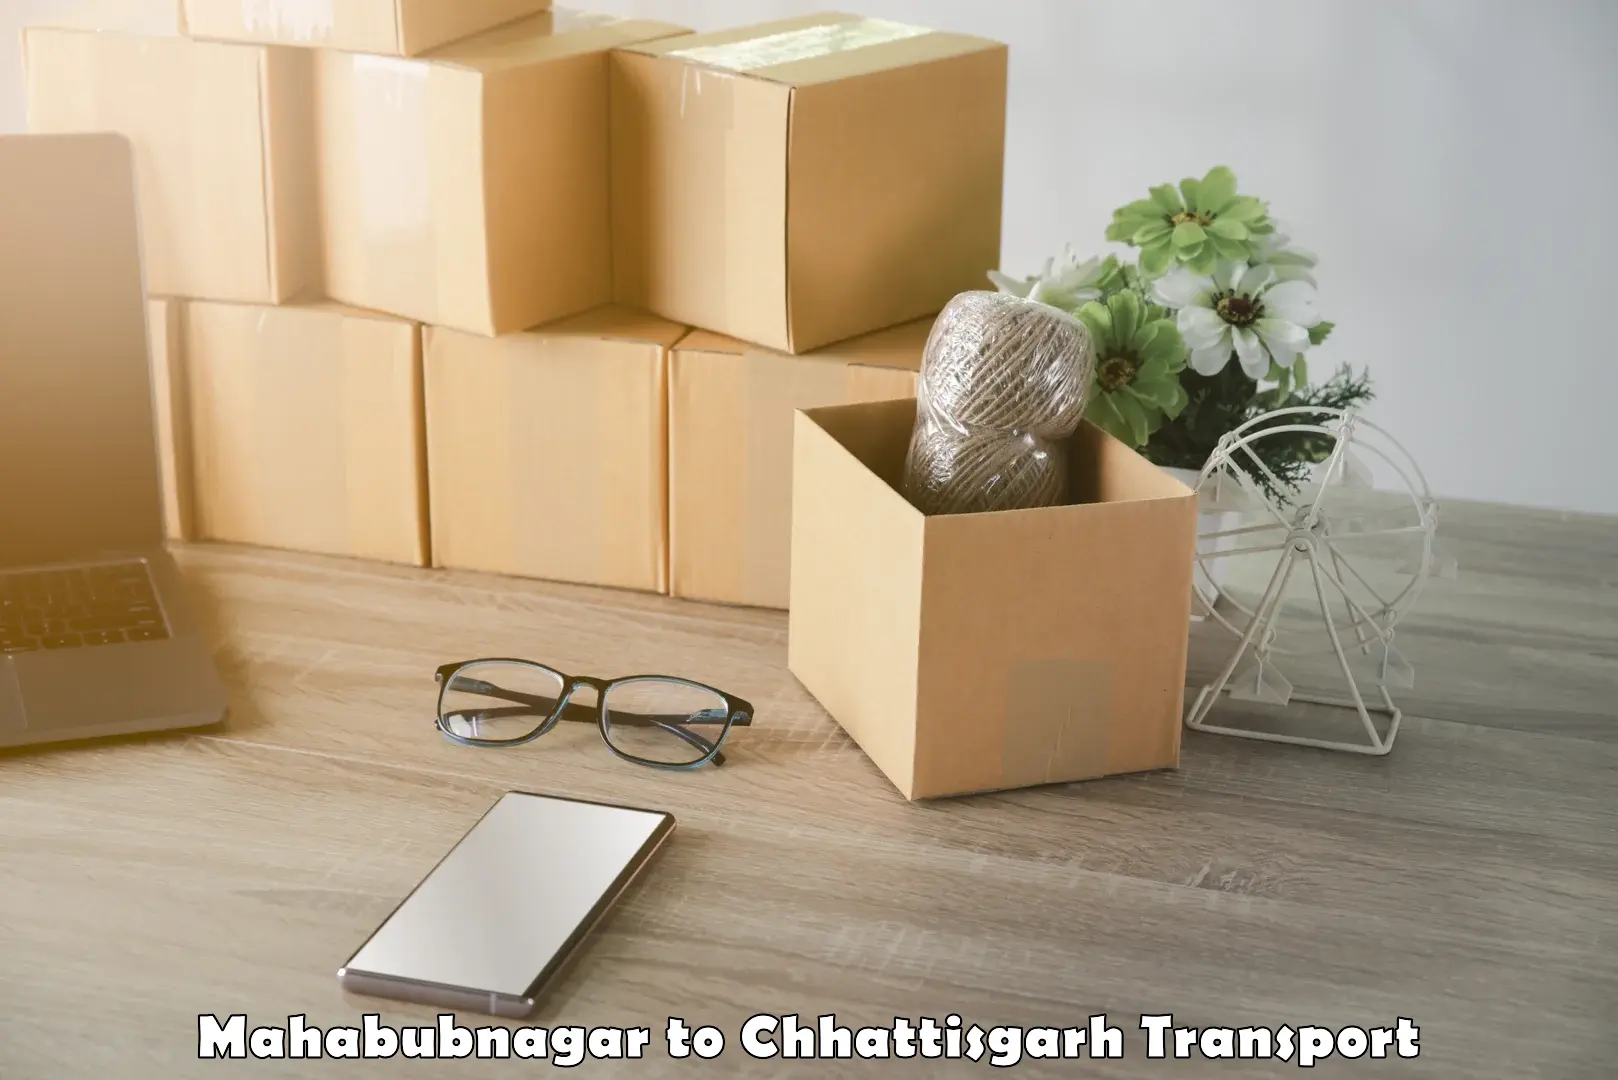 Pick up transport service Mahabubnagar to Chhattisgarh